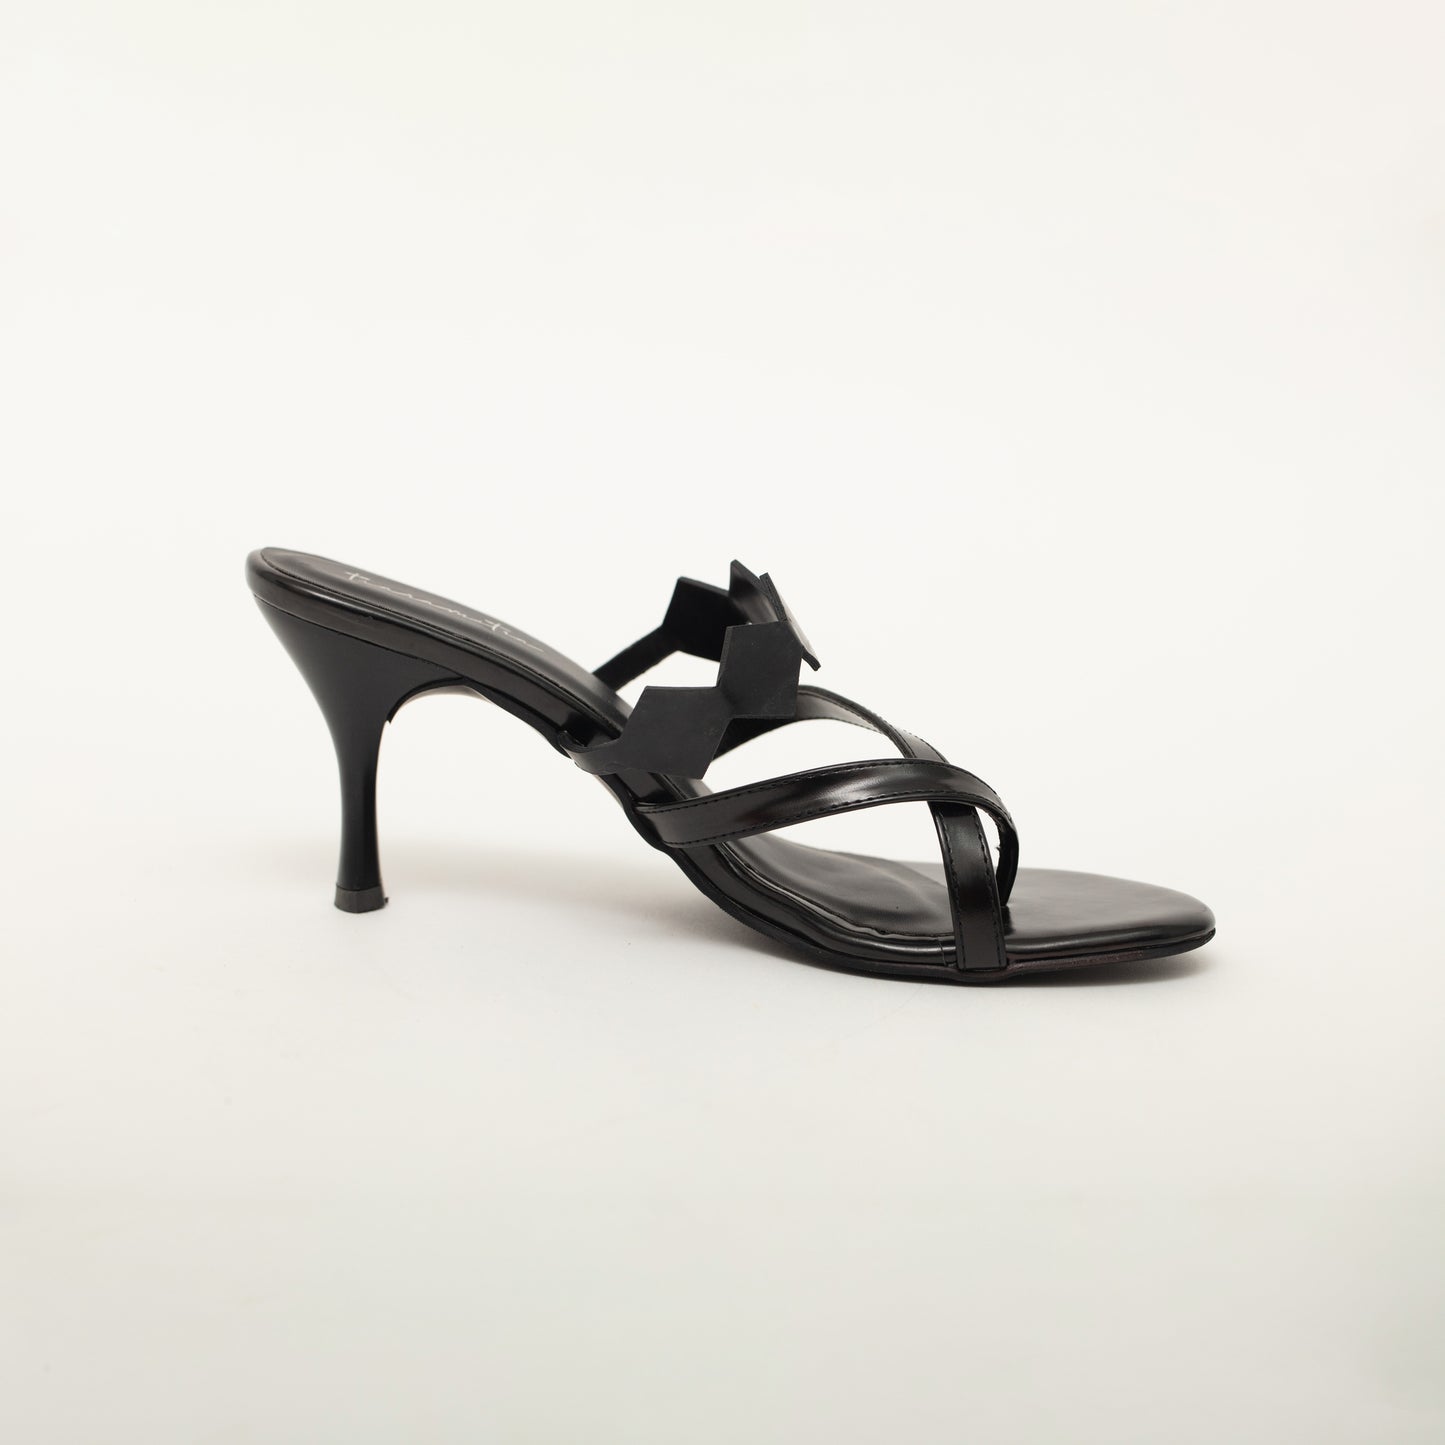 Elegante noir heels in black